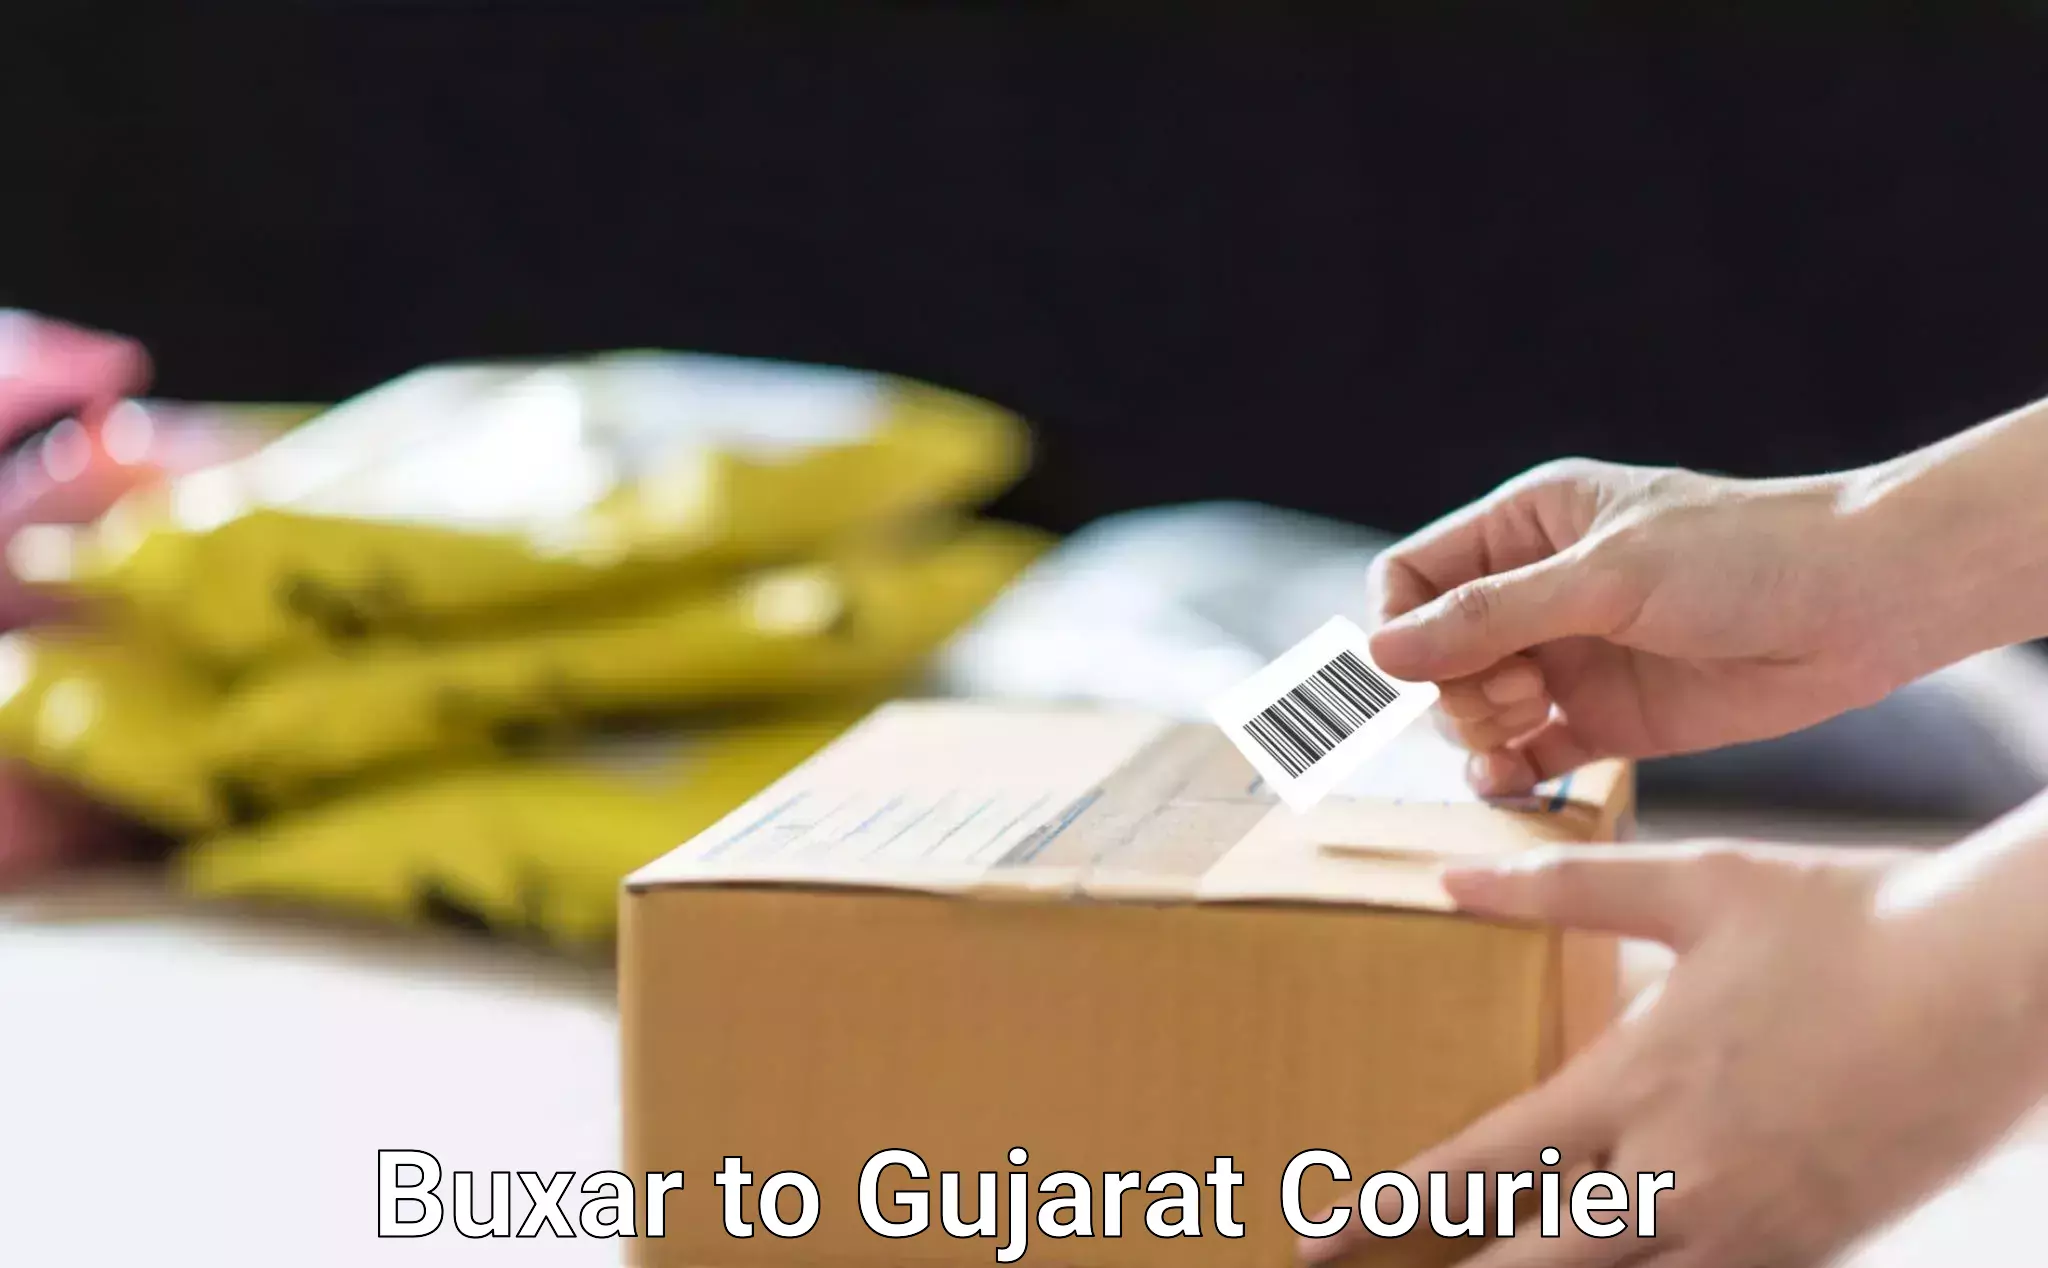 Skilled furniture movers Buxar to Gandhinagar